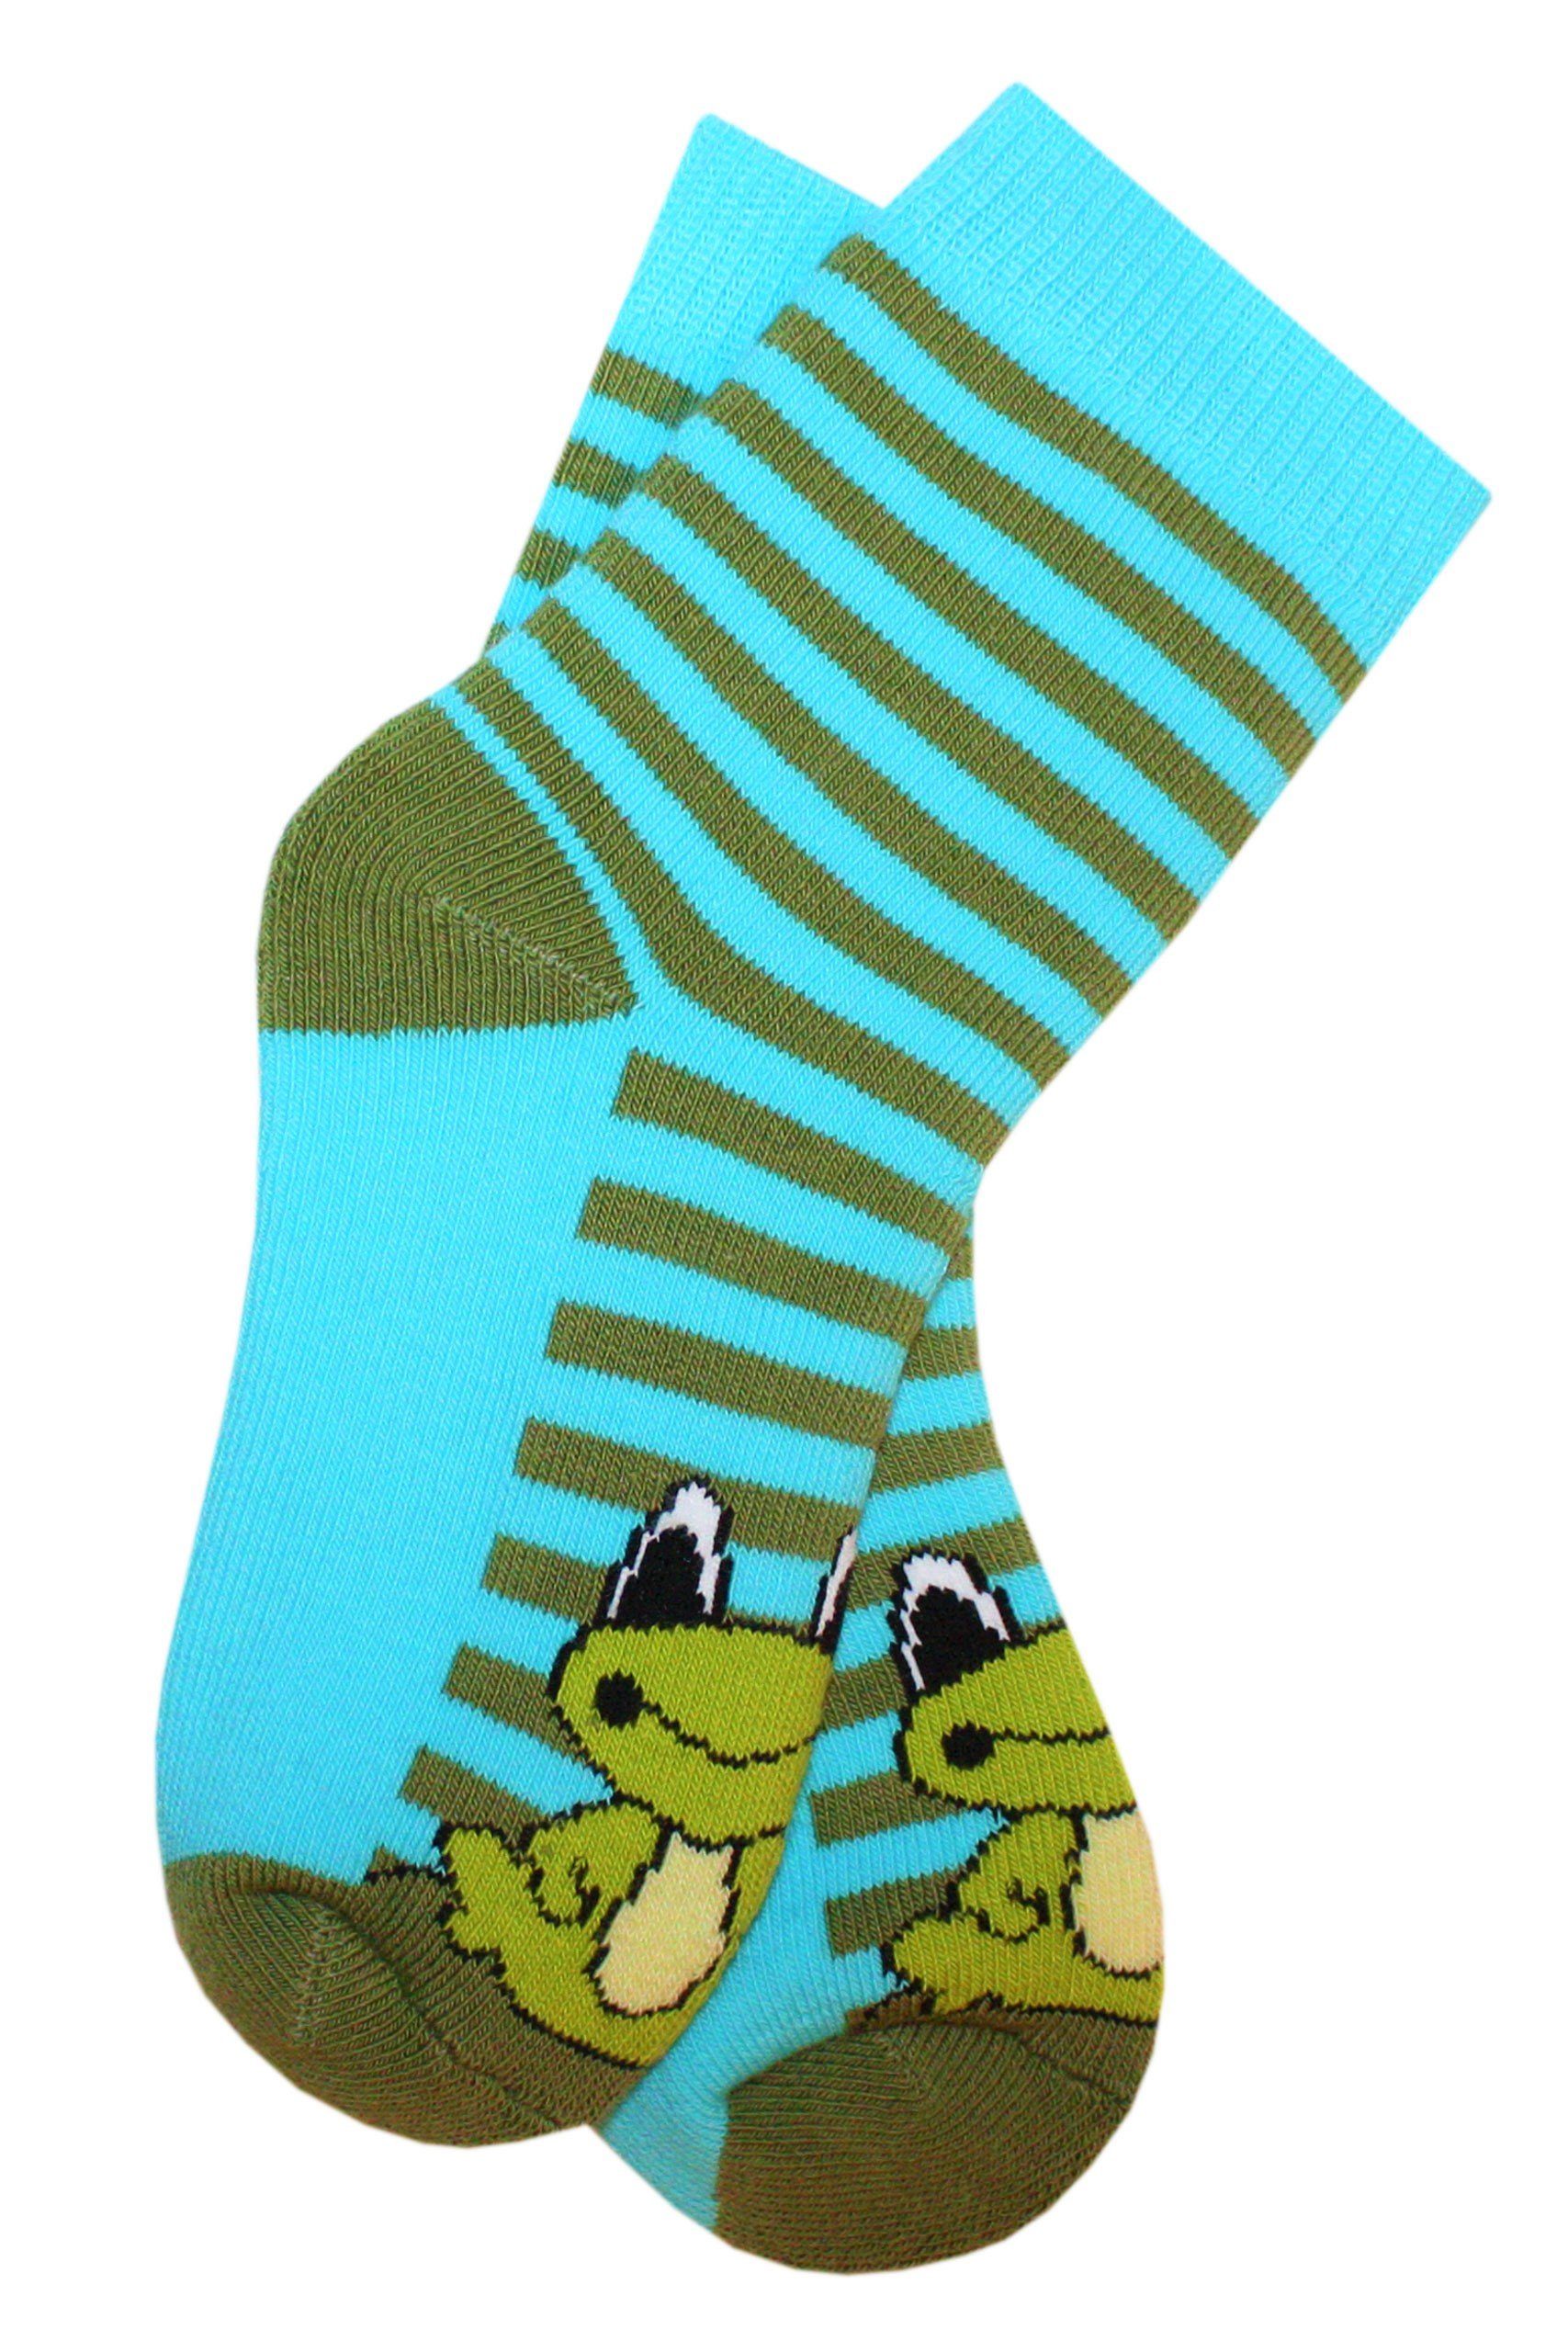 Kinder Jungen (Gr. 50 - 92) WERI SPEZIALS Strumpfhersteller GmbH Socken Kinder Plüsch Socken Thermo Voll Frottee Frosch mit Baum